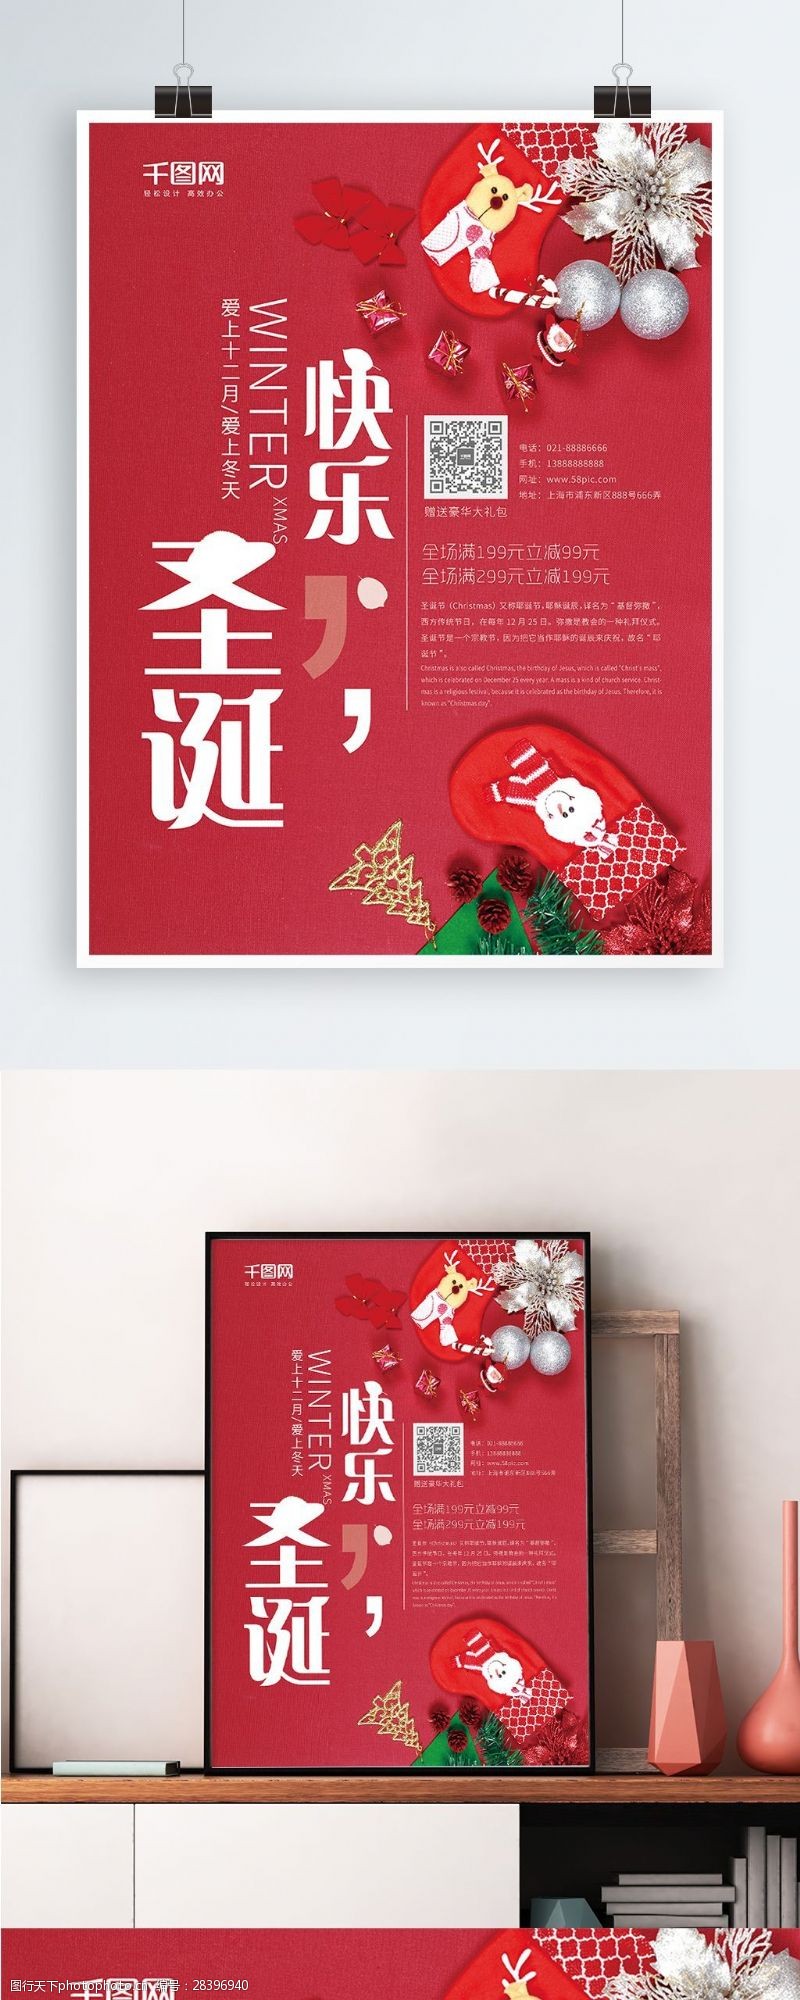 双旦创意海报极简红色喜庆元旦节圣诞节促销海报